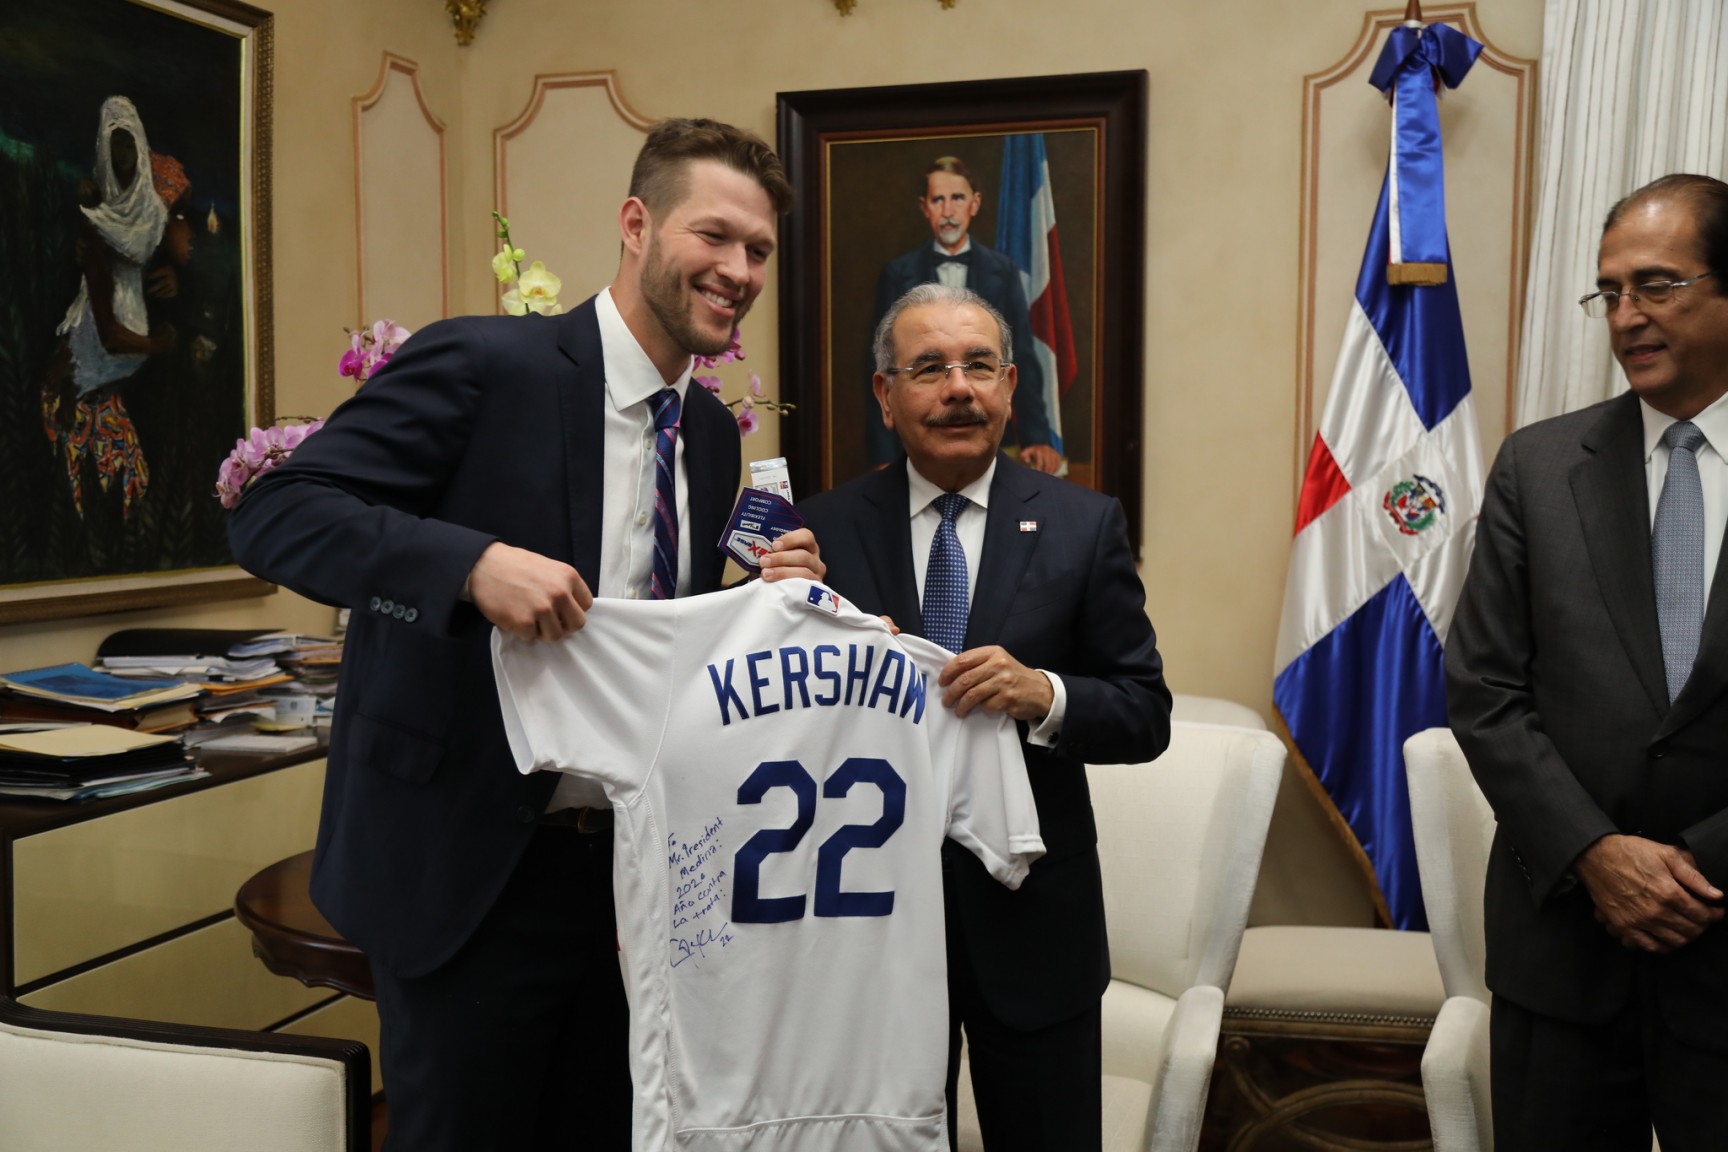 REPÚBLICA DOMINICANA: Presidente Danilo Medina recibe a Cleyton Kershaw, lanzador estrella de los Dodgers de Los Ángeles